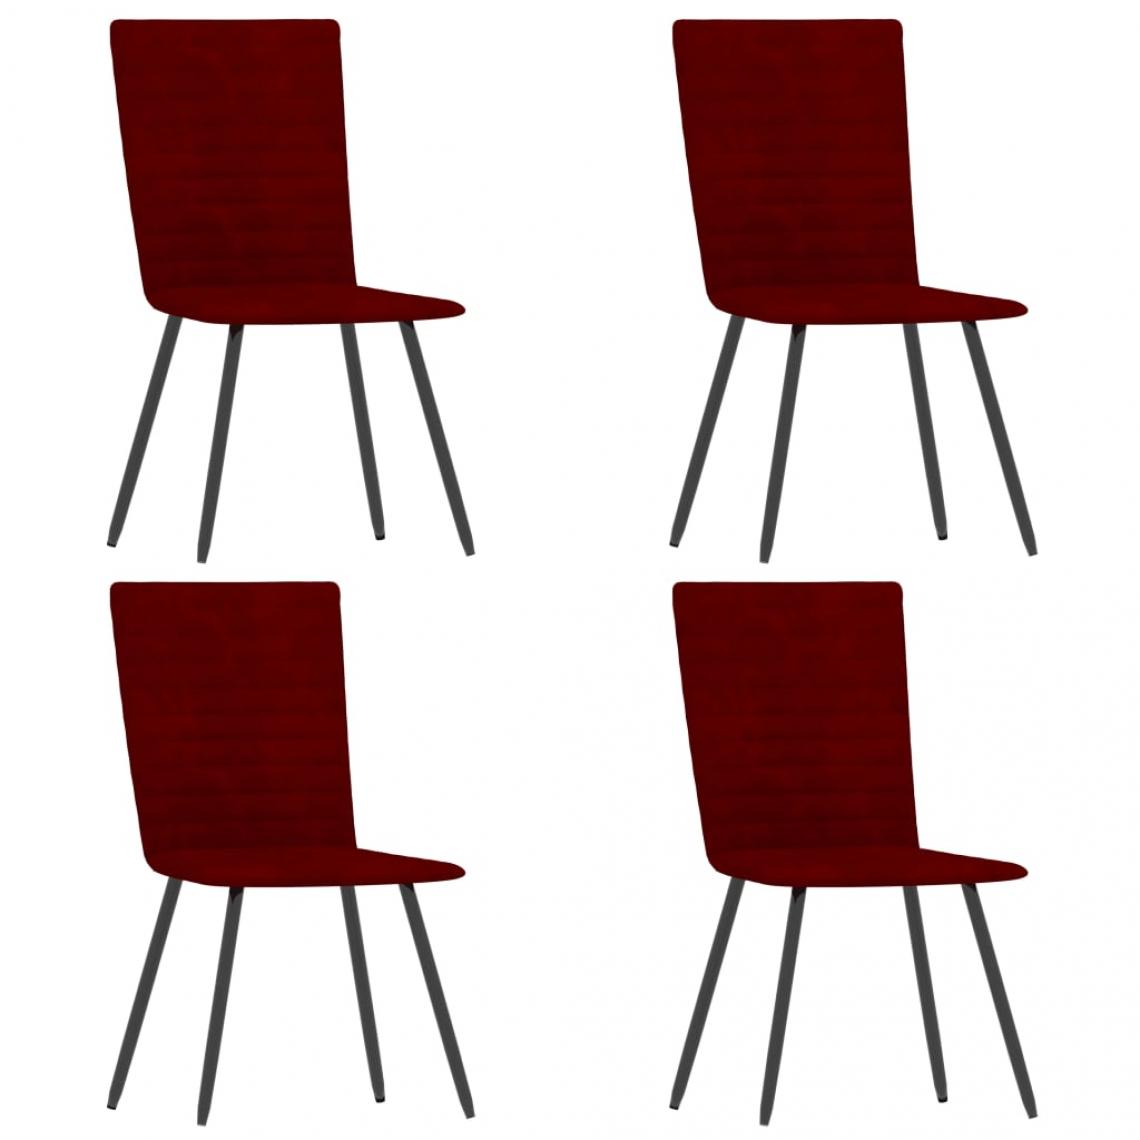 Decoshop26 - Lot de 4 chaises de salle à manger cuisine design classique velours rouge bordeaux CDS021957 - Chaises